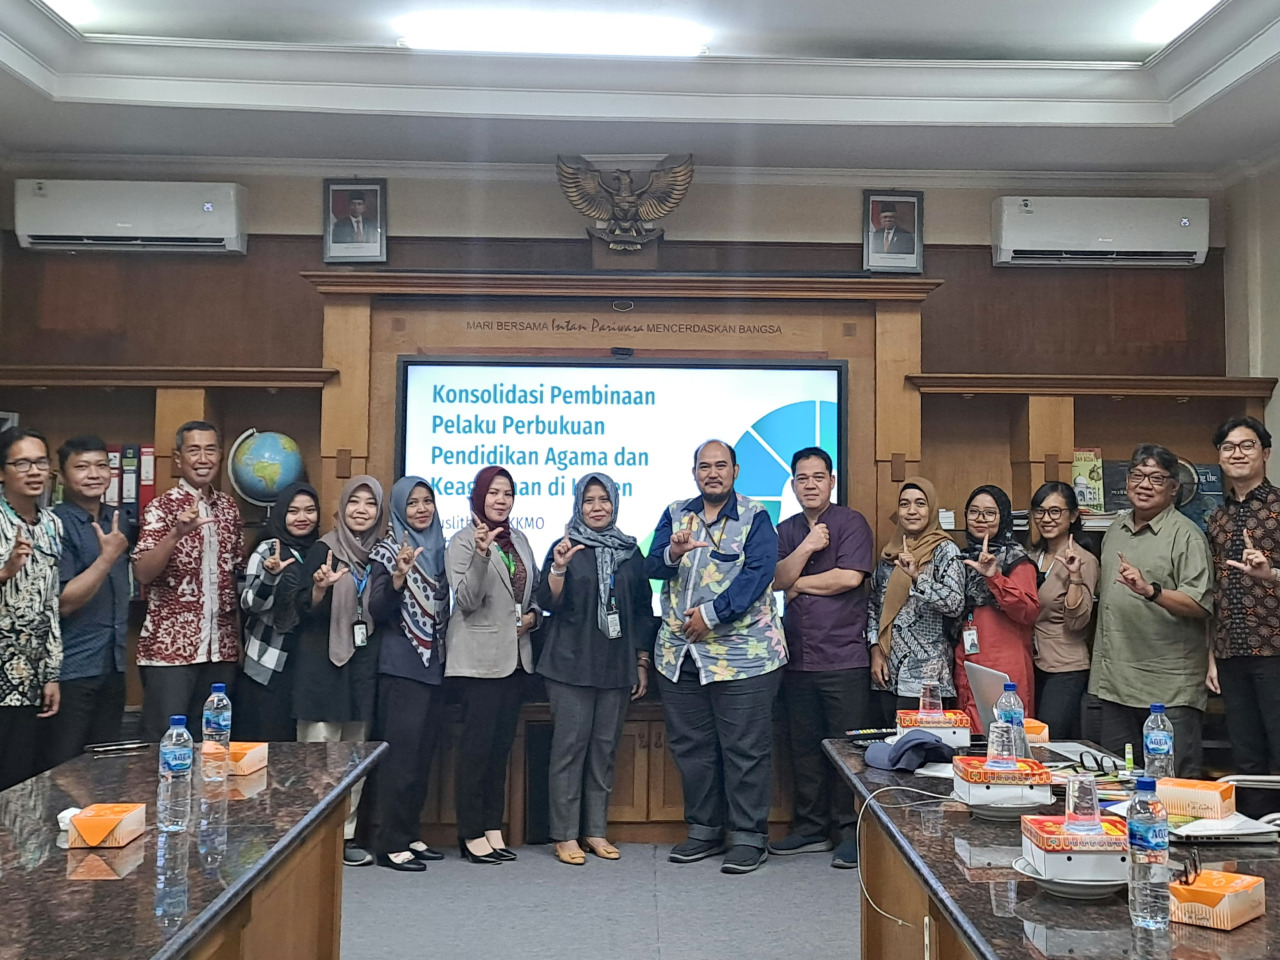 Puslitbang LKKMO Bersua dengan Penerbit Yogyakarta dalam Konsolidasi Pembinaan Pelaku Perbukuan Pendidikan Agama dan Keagamaan